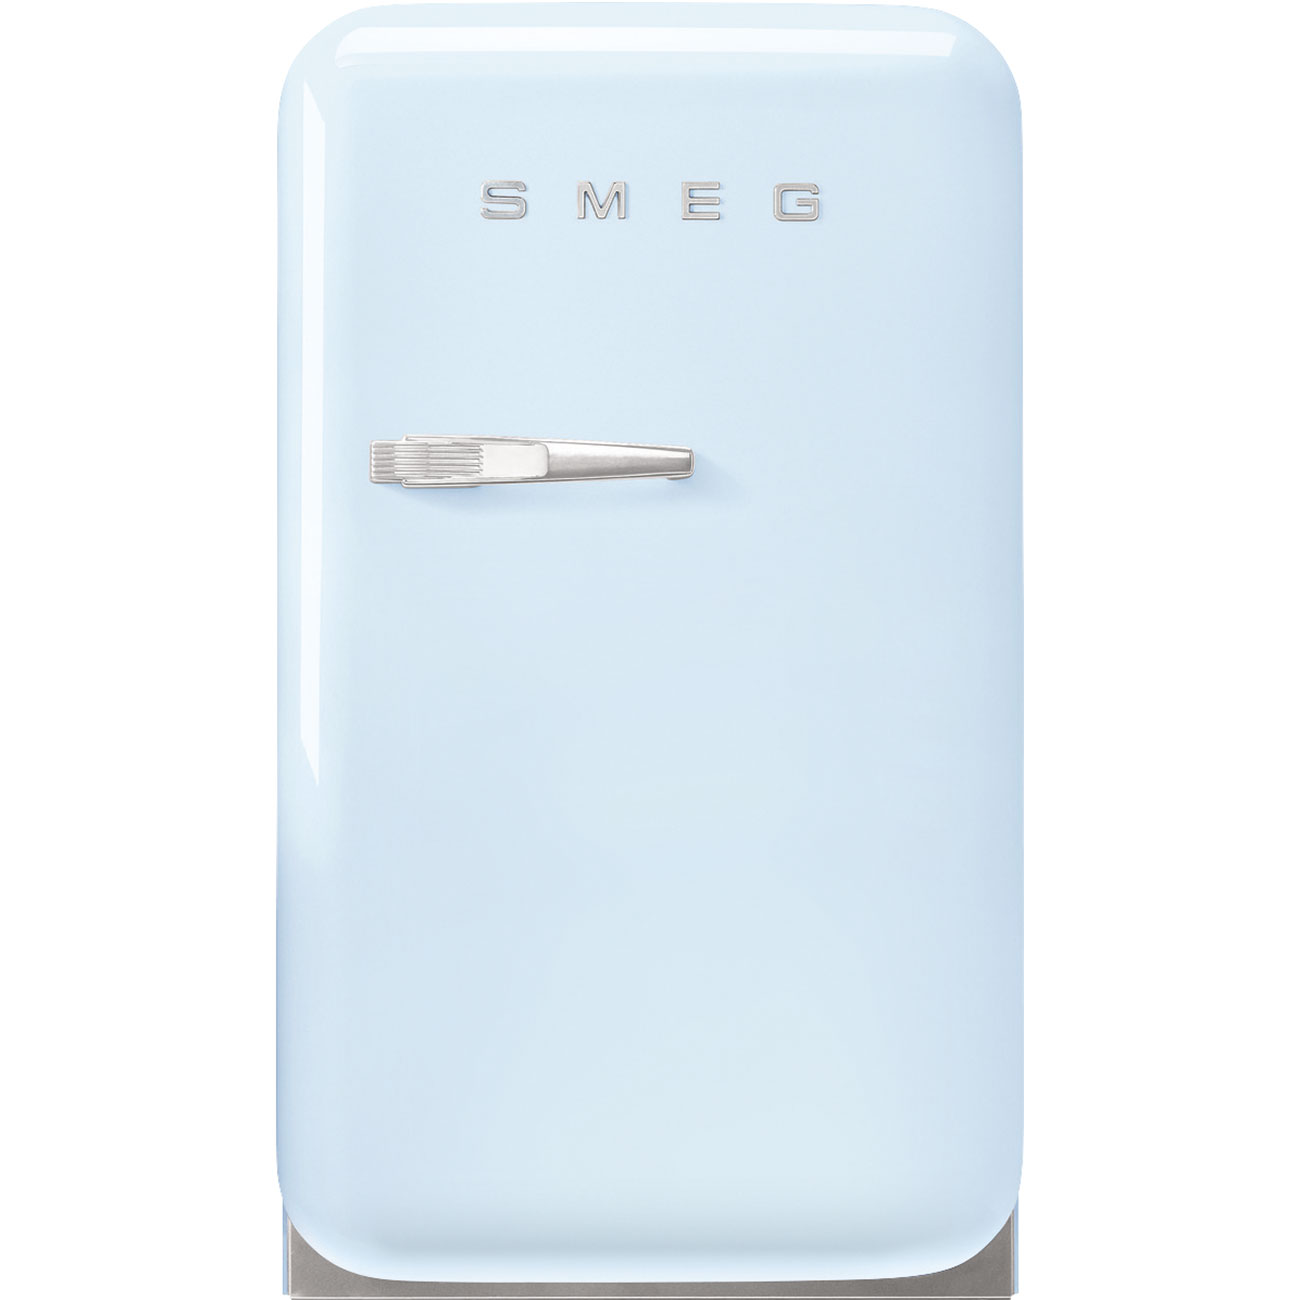 Pastel blue refrigerator - Smeg_1